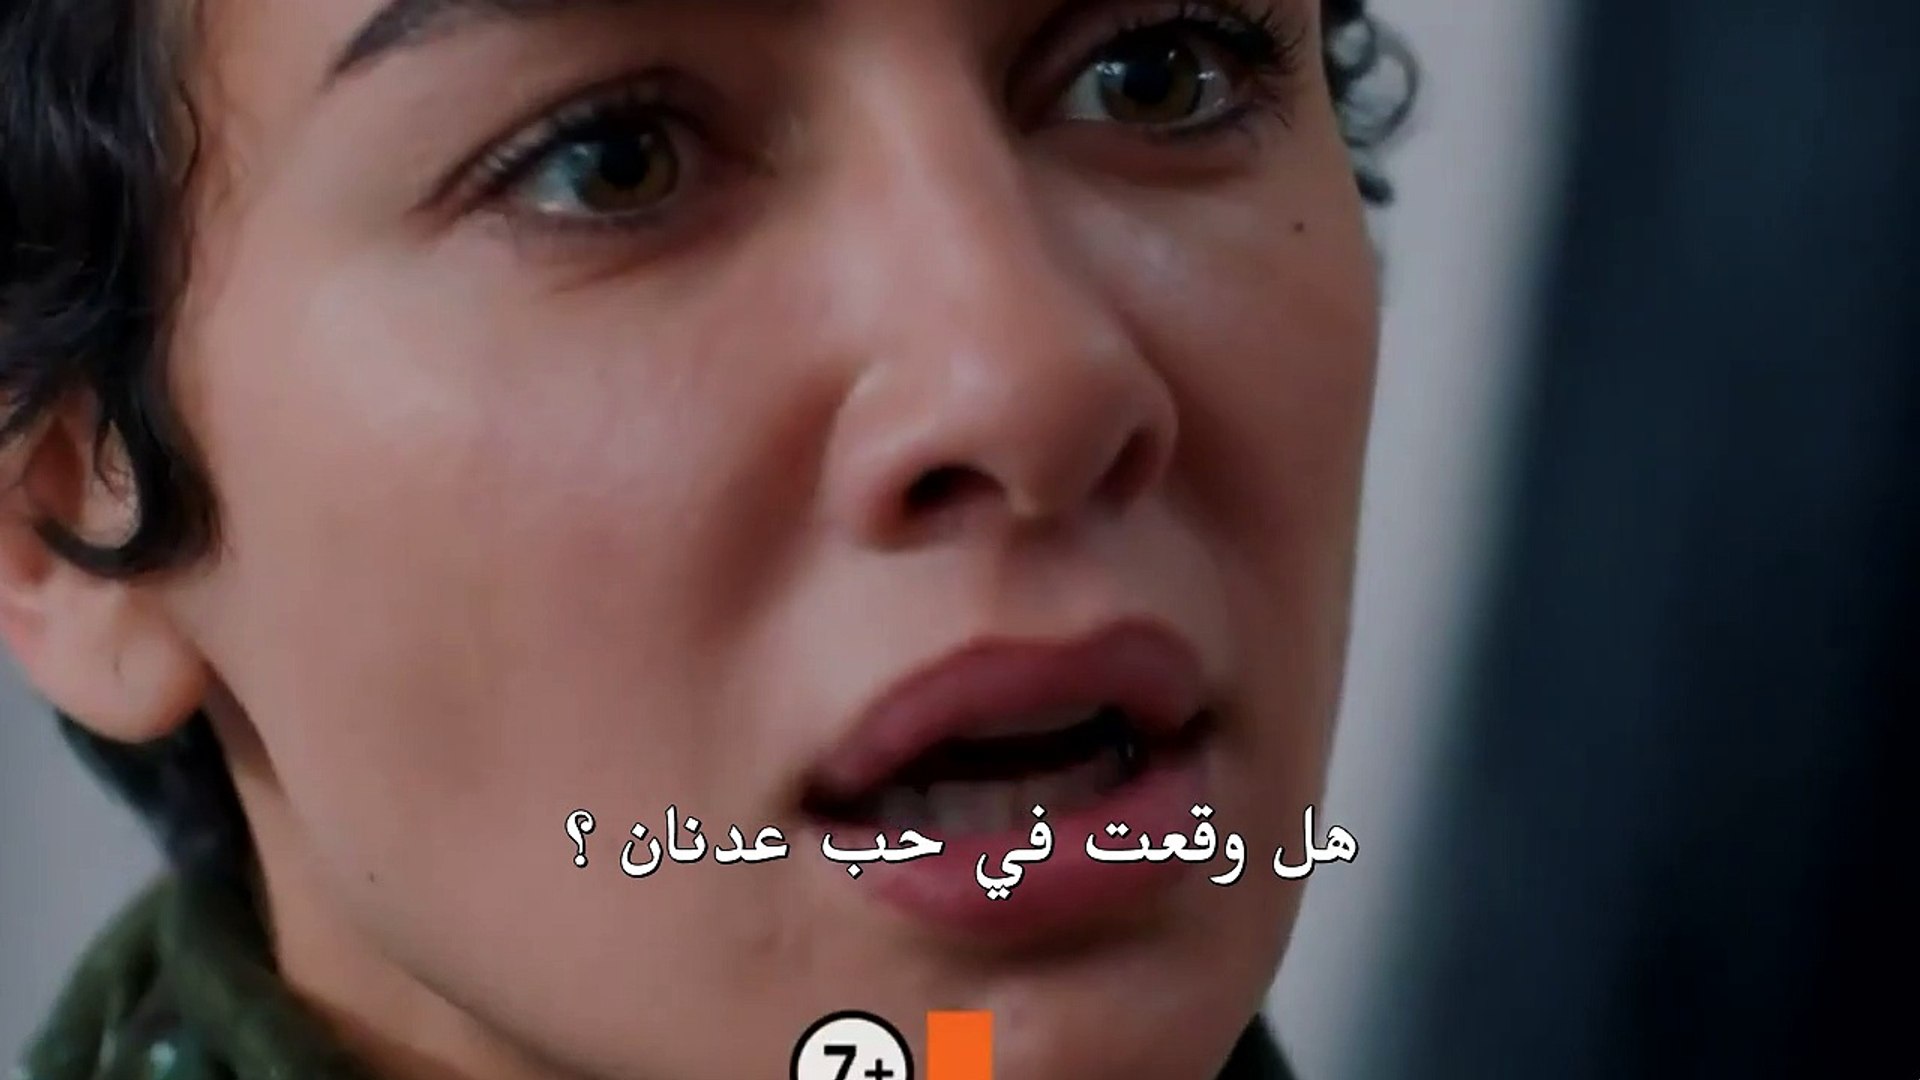 مسلسل لا تبكي يا امي الحلقة 3 مترجمة للعربية فيديو Dailymotion